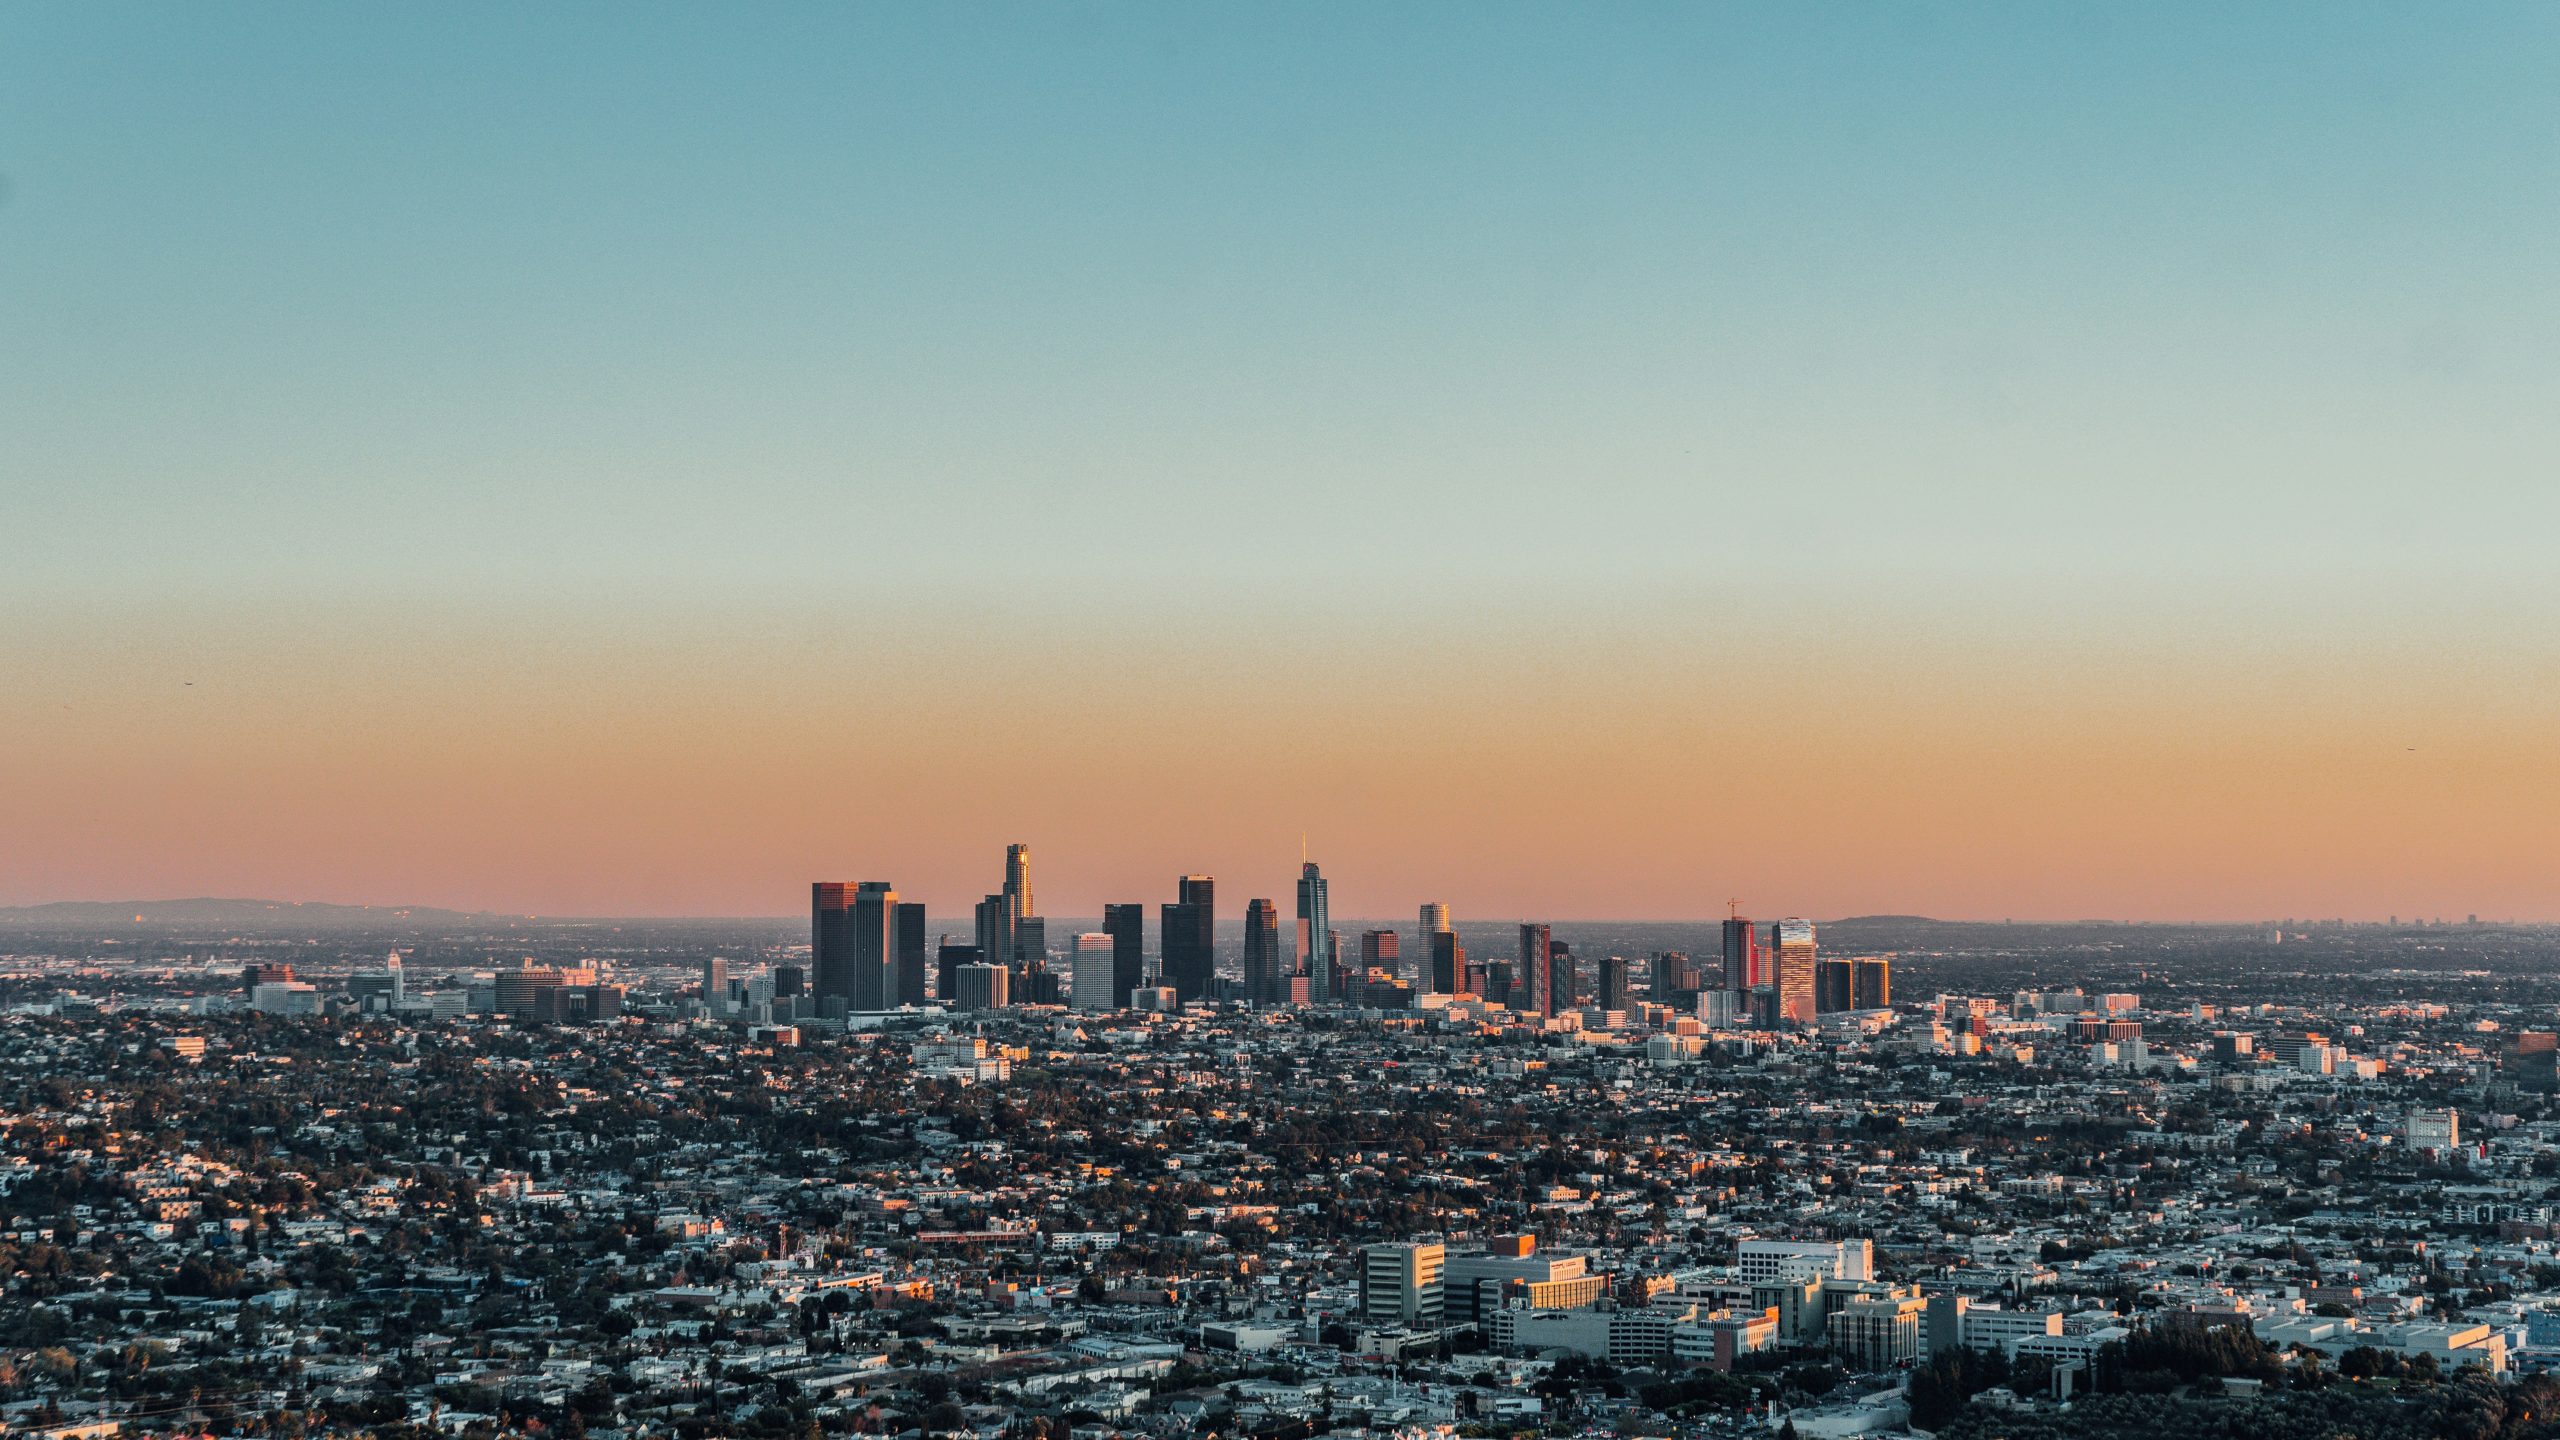 Nextdoor Kind基金会提供洛杉矶县微型拨款，提升社区精神